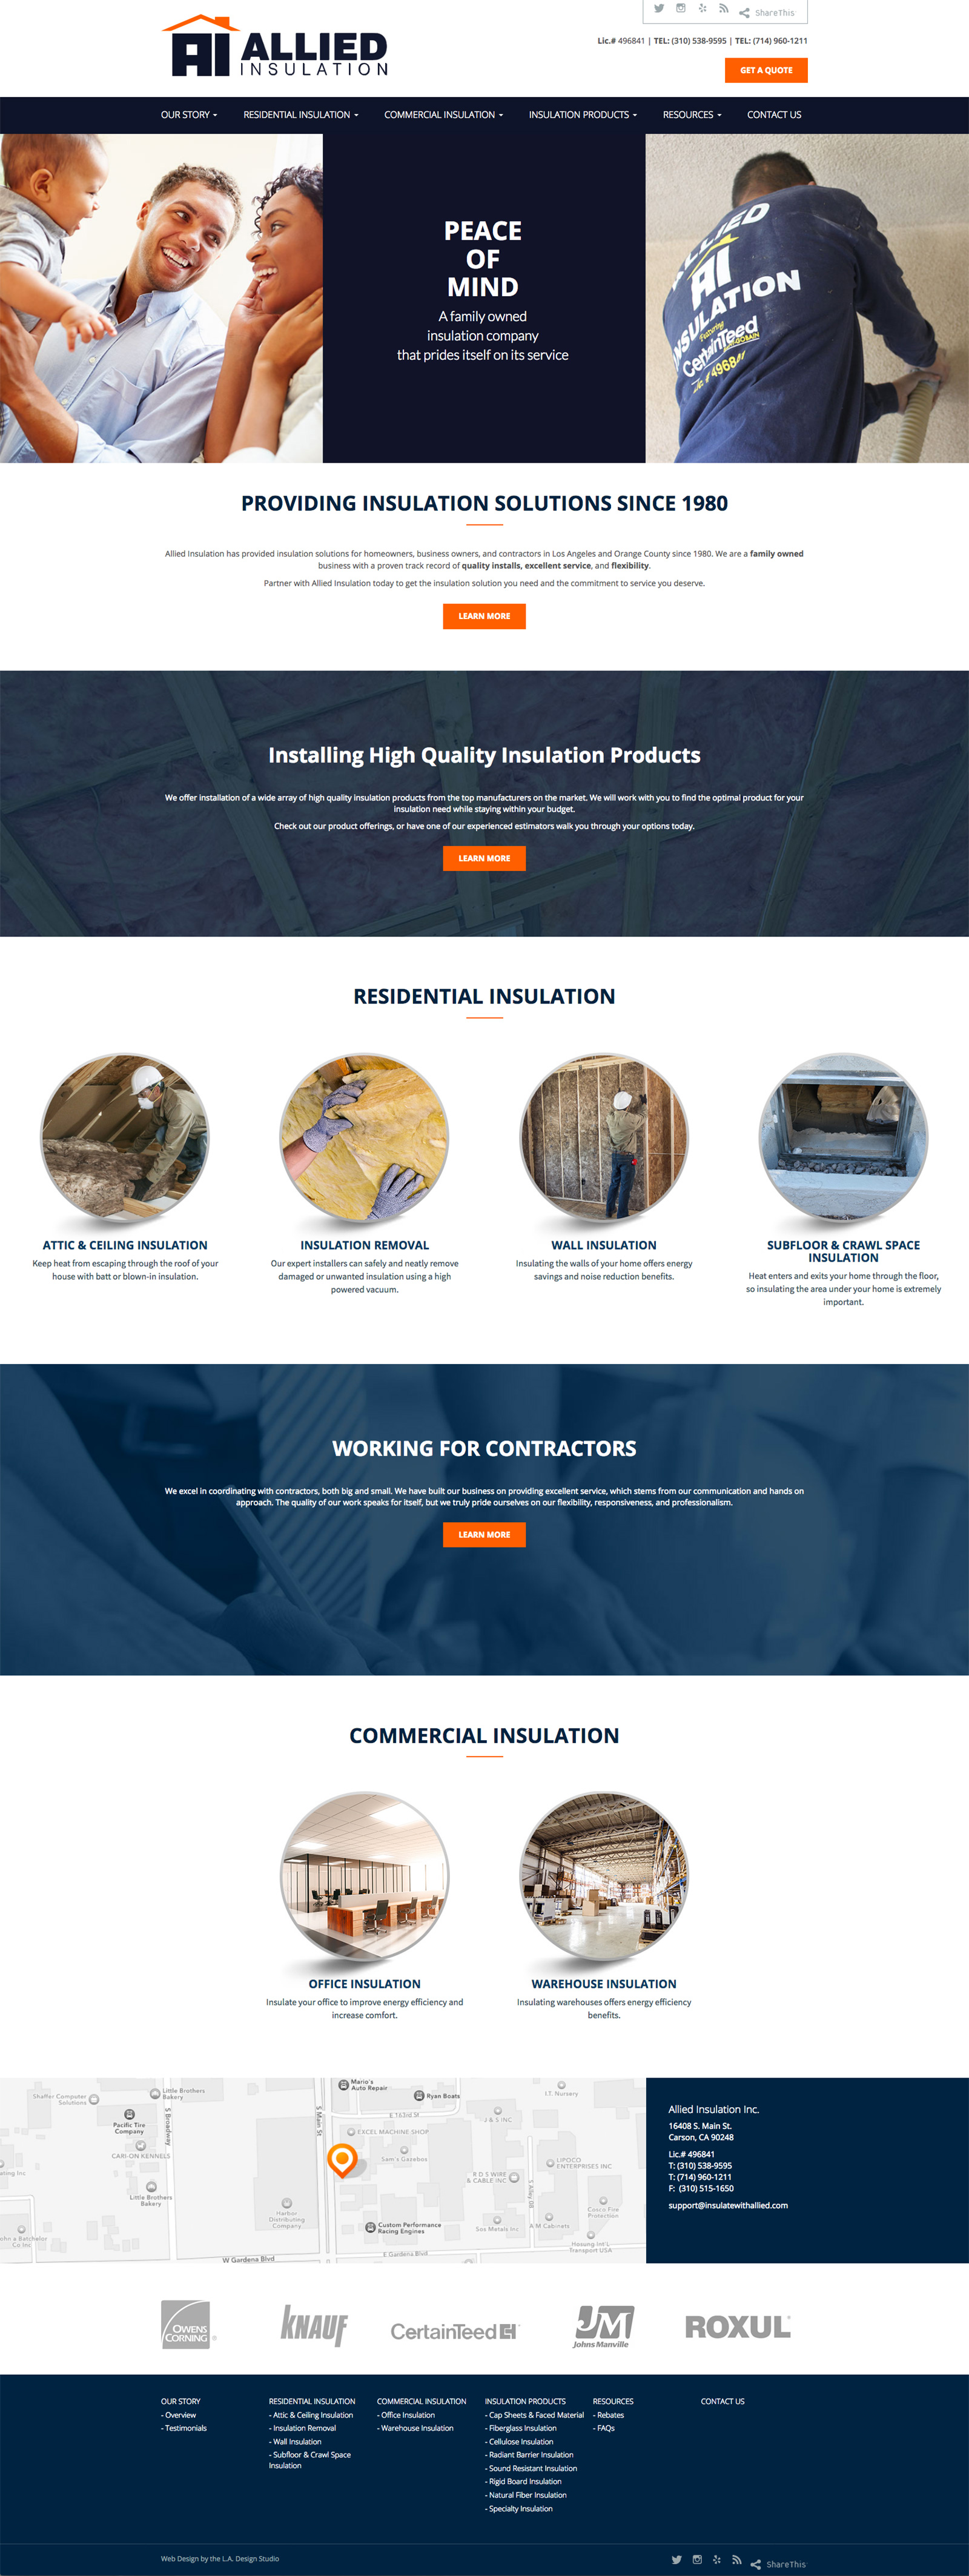 Allied Insulation Website Design